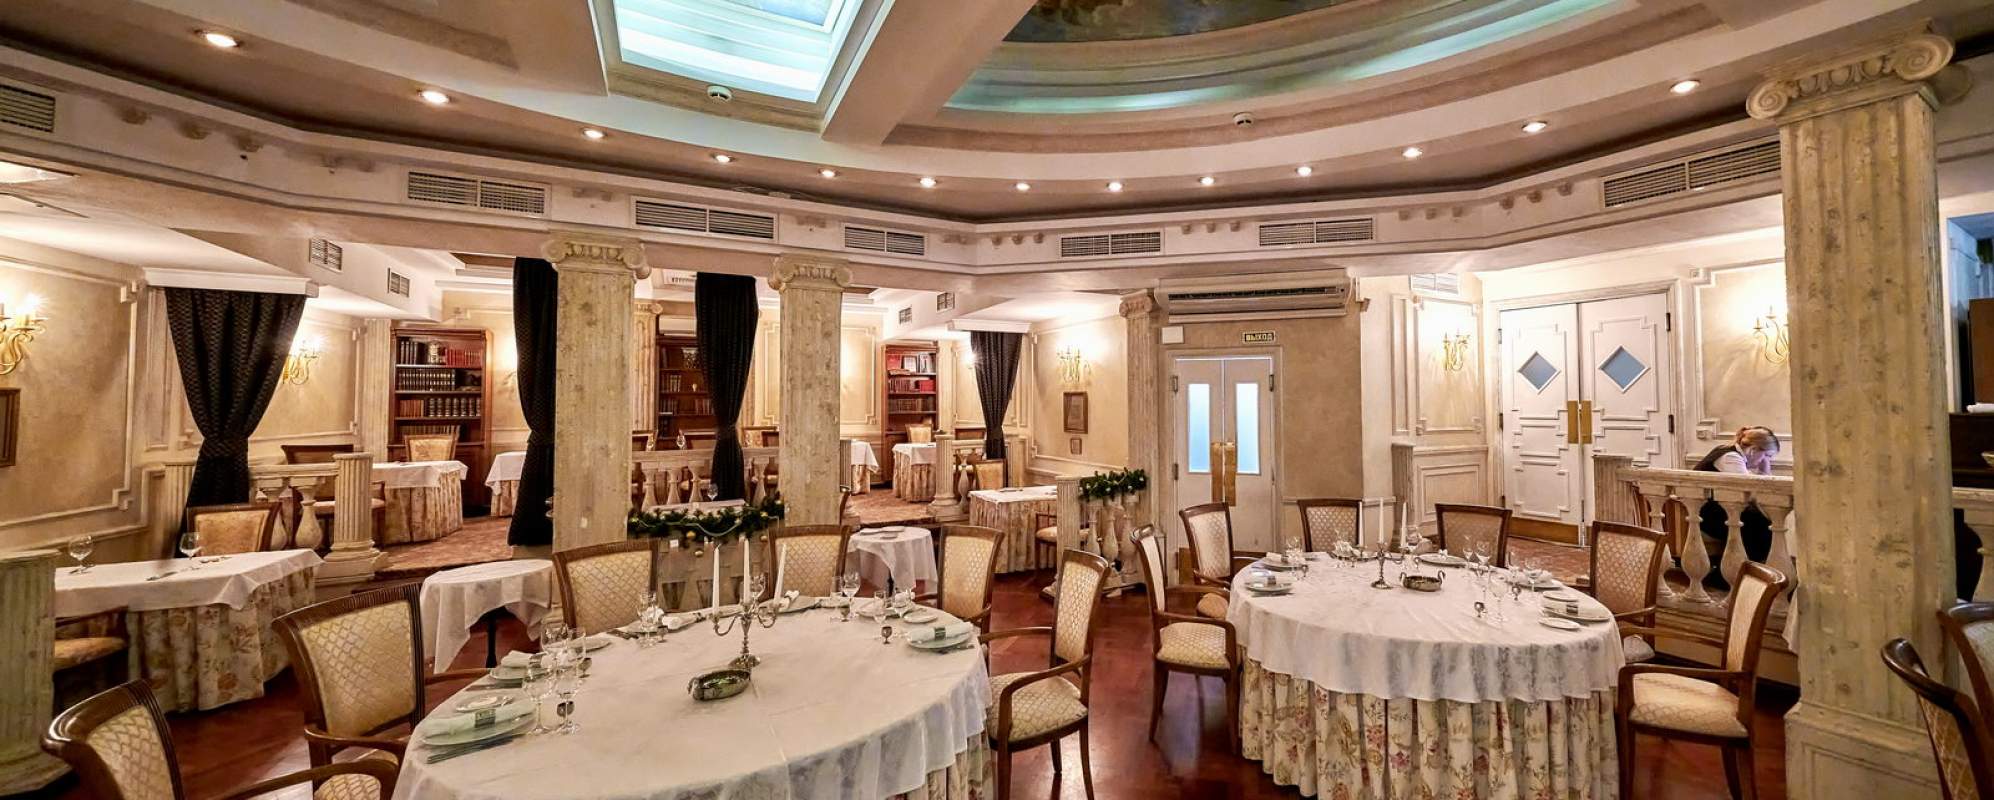 Фотографии банкетного зала Зал ресторана Ф.М. Достоевский